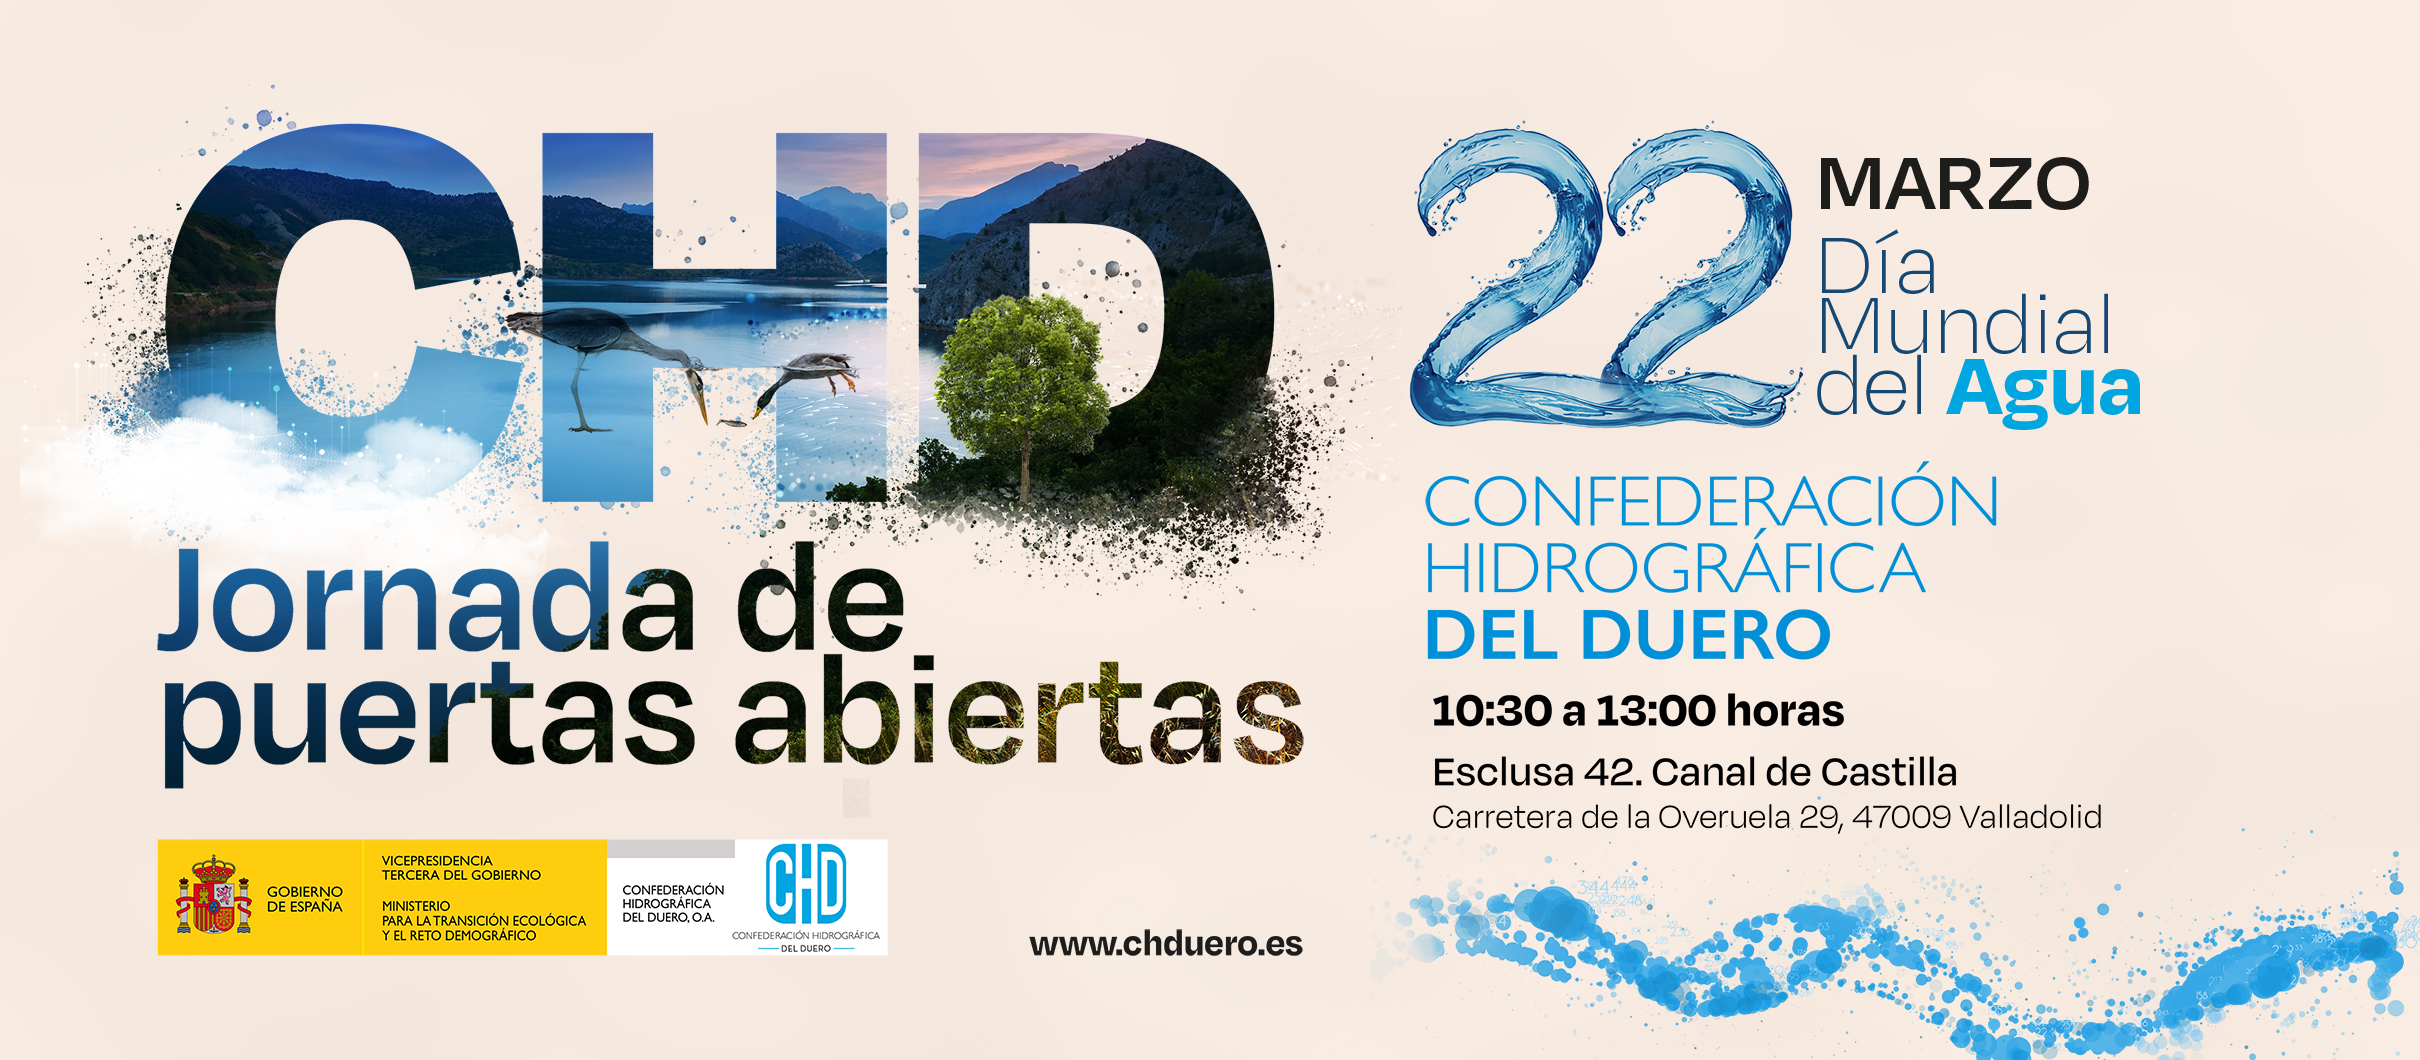 La CHD celebra una jornada de Puertas Abiertas con motivo del Día Mundial del Agua